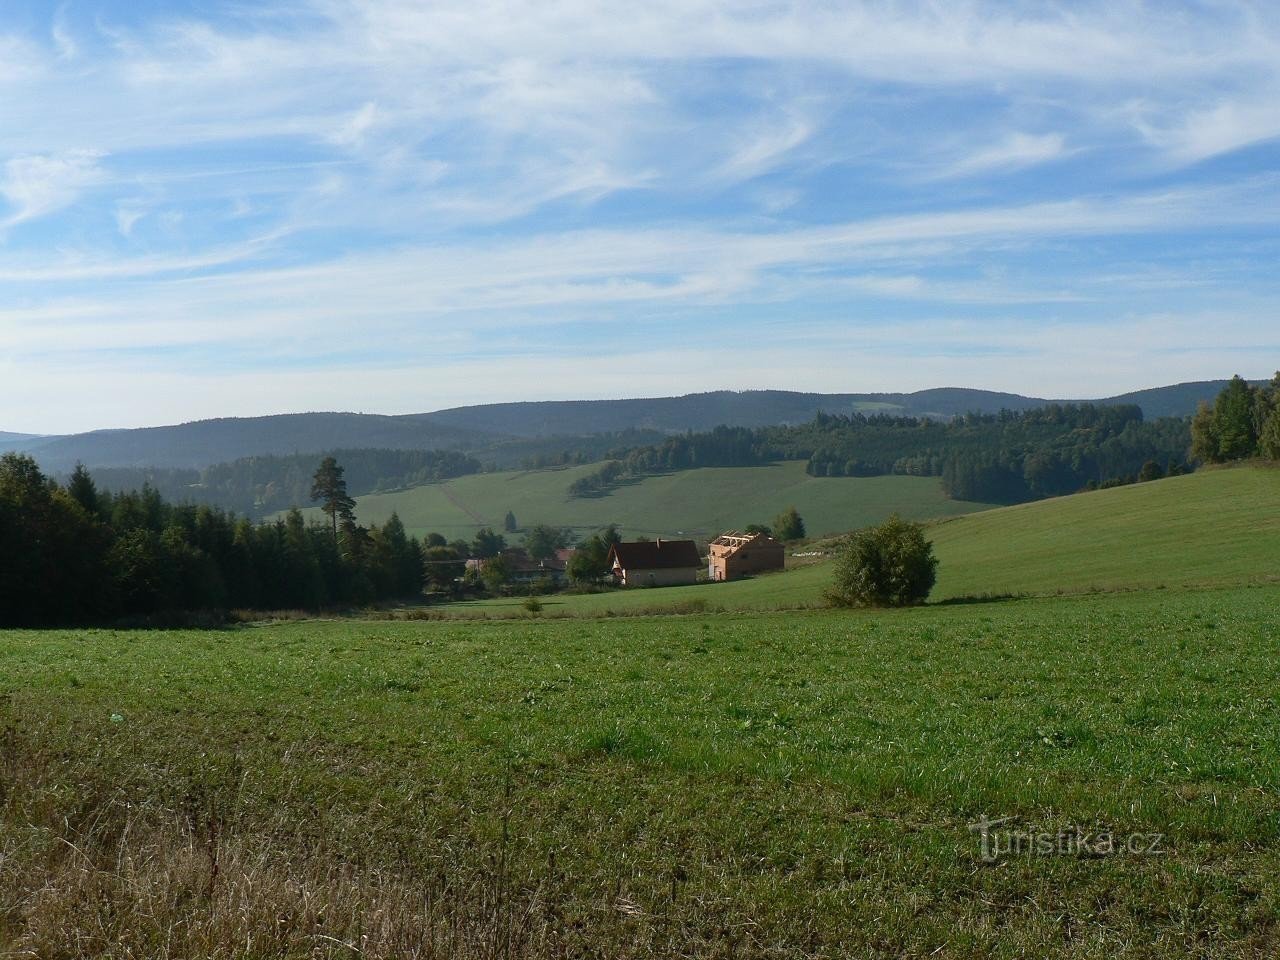 Libětice von Norden, im Hintergrund der Böhmerwald